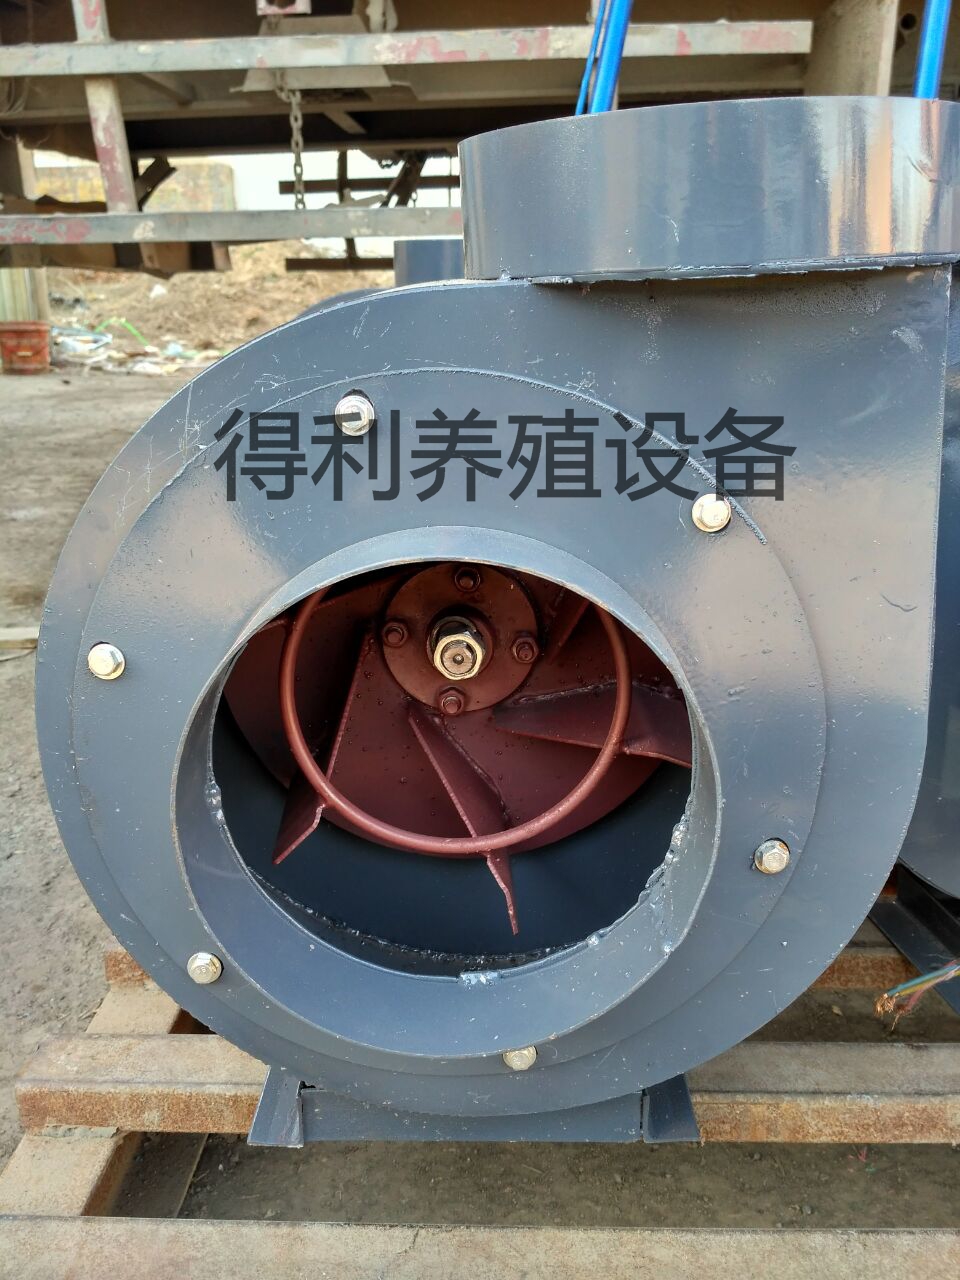 养殖水暖锅炉养殖专用加温自动温控设备养鸡舍供暖升温锅炉散热器设备图片